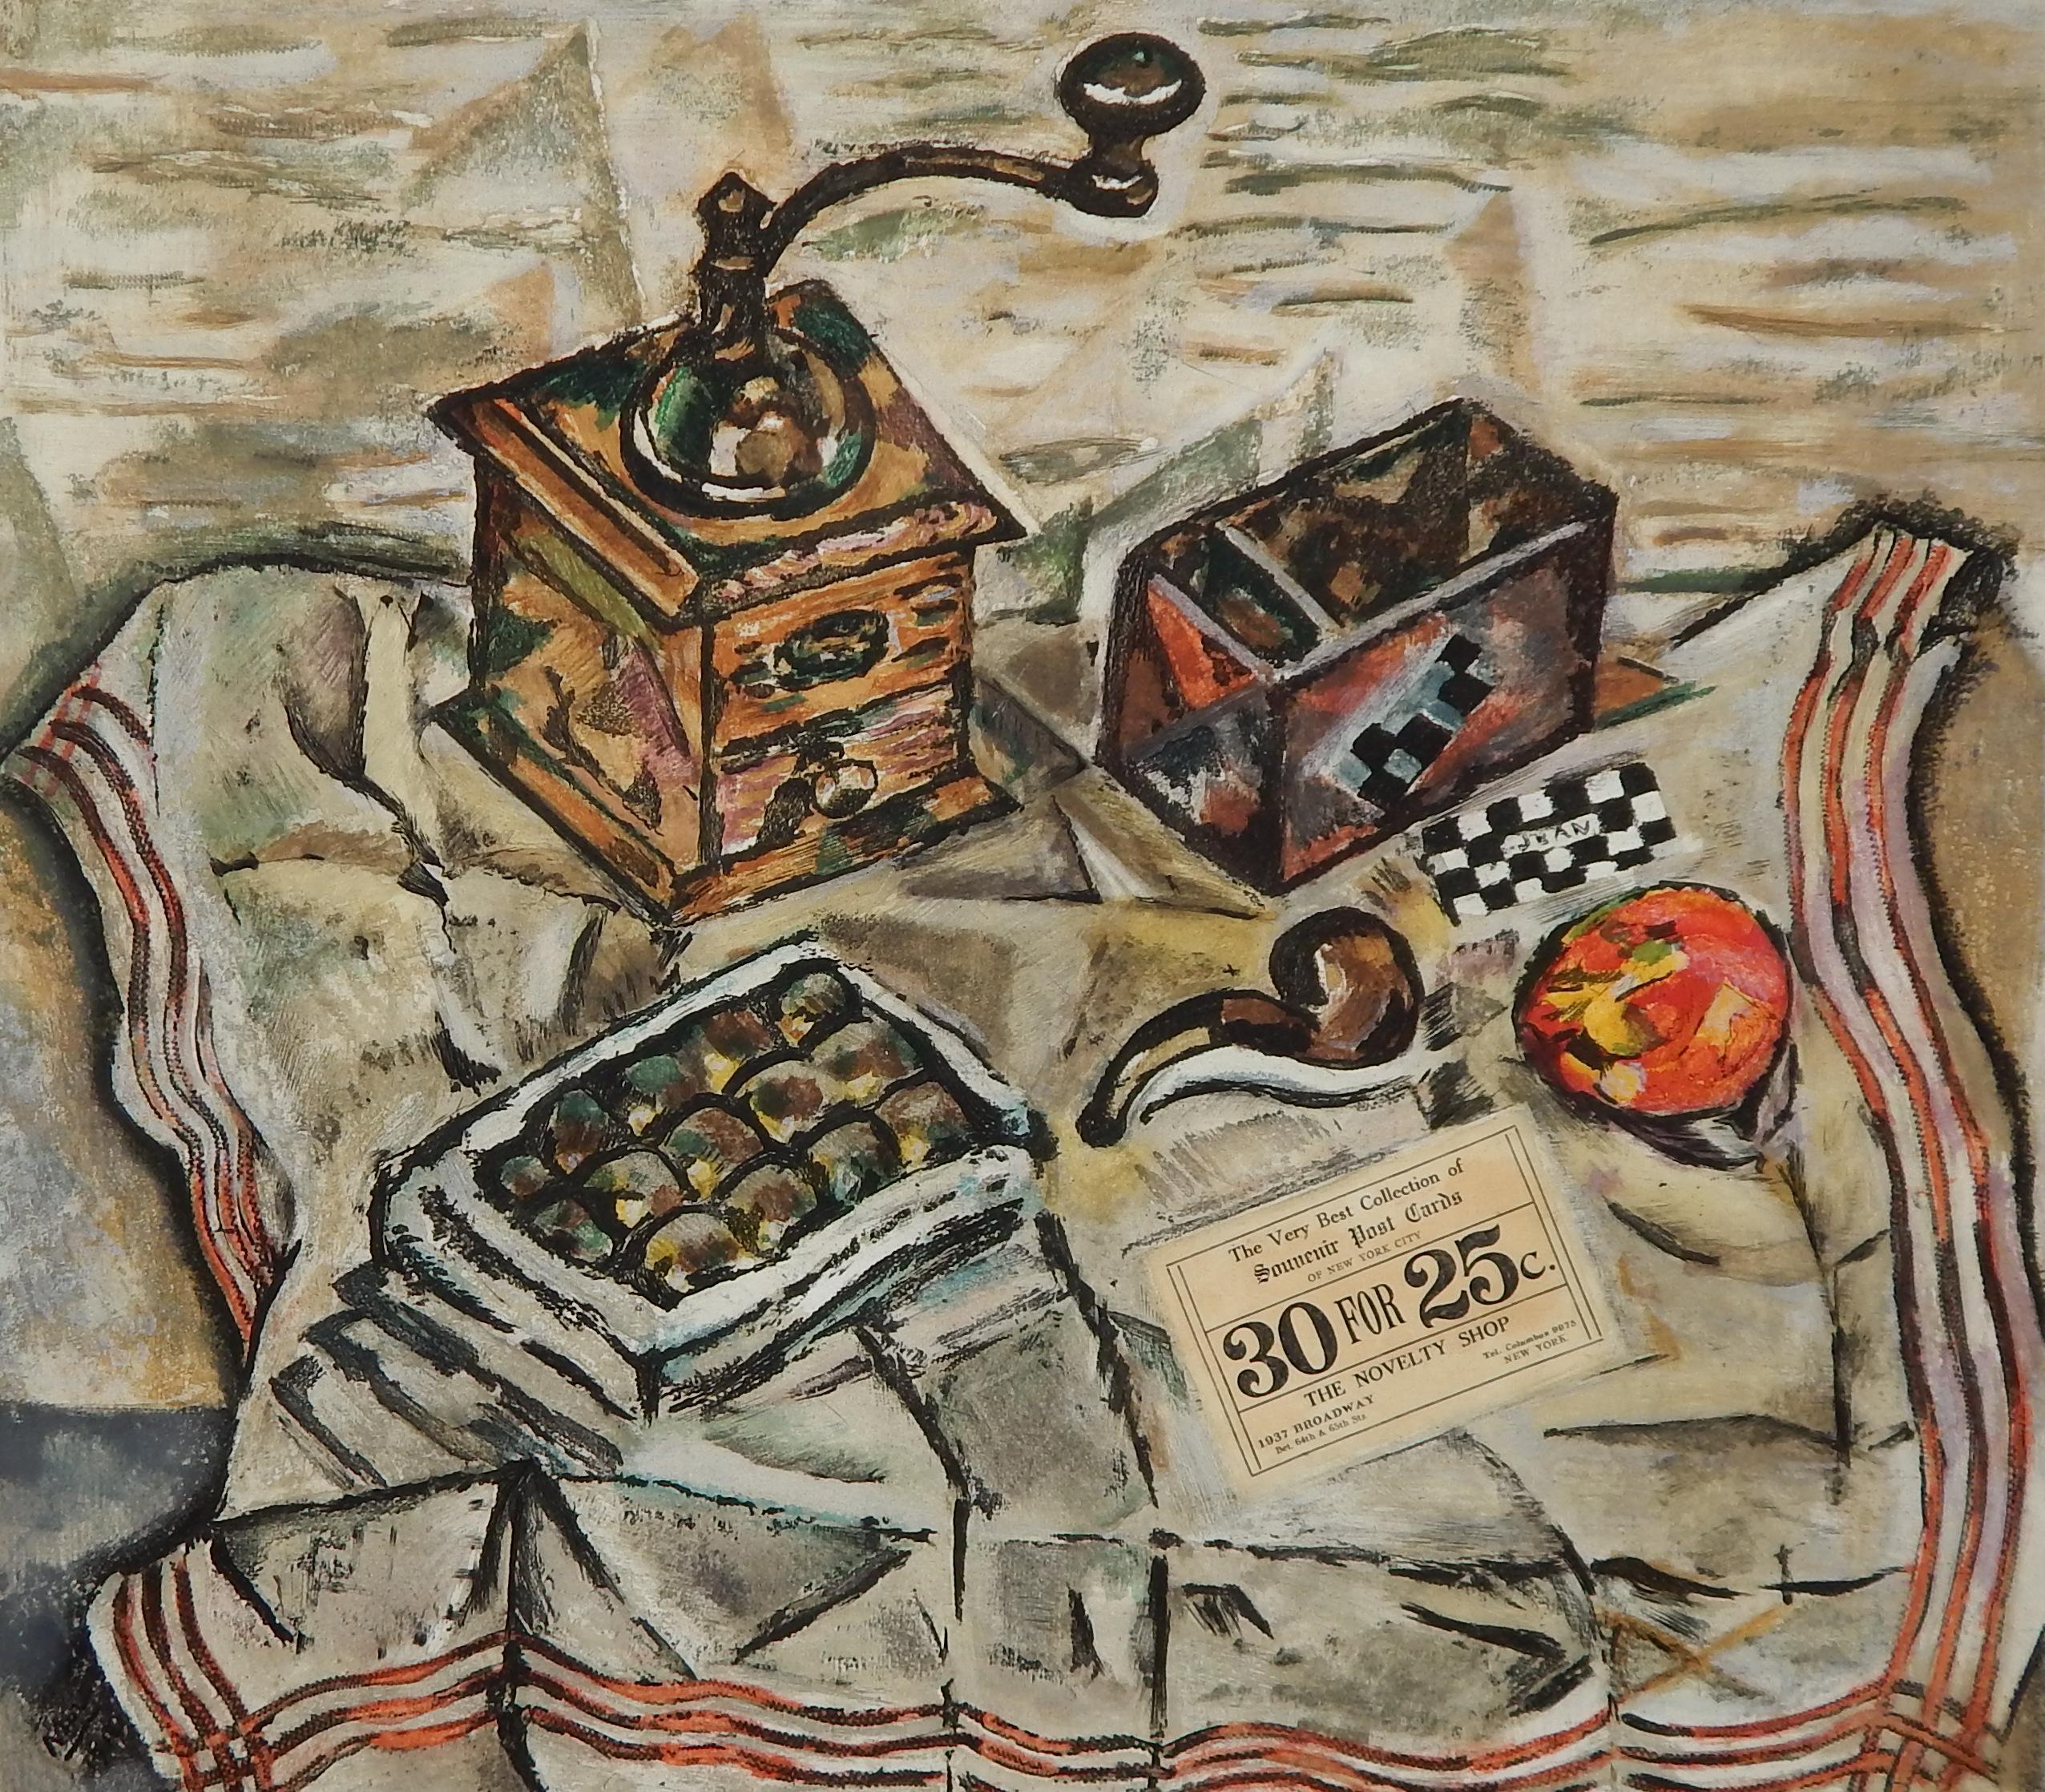 Gravure à l'eau-forte avec aquatinte, numérotée et signée à la main, sur papier vélin BFK Rives
(Après) Joan Miro (1893-1983). Ed : 300. 
Titre : Le Moulin à Café. (Moulin à café)
Image : 19